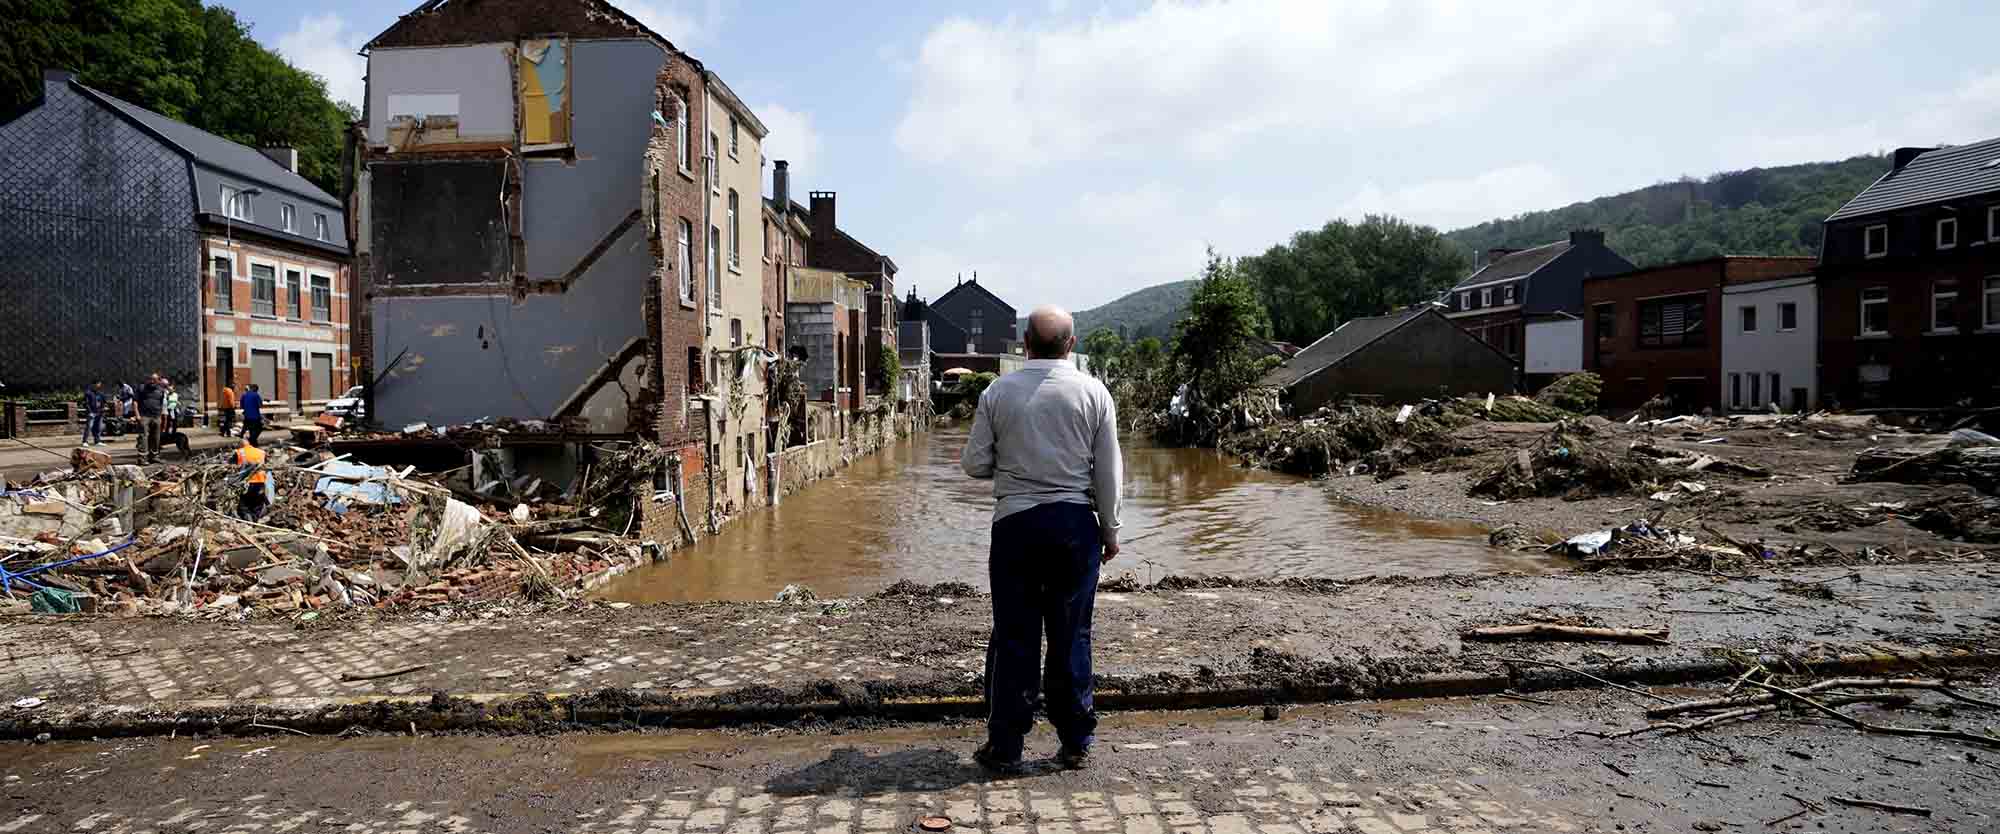 נזק מהצפות בבלגיה, יולי 2021. משבר האקלים חייב להיות בלב הדיון האסטרטגי של הפוליטיקה העולמית במאה הזו (צילום:וירג'יניה מאיו, AP Photo)